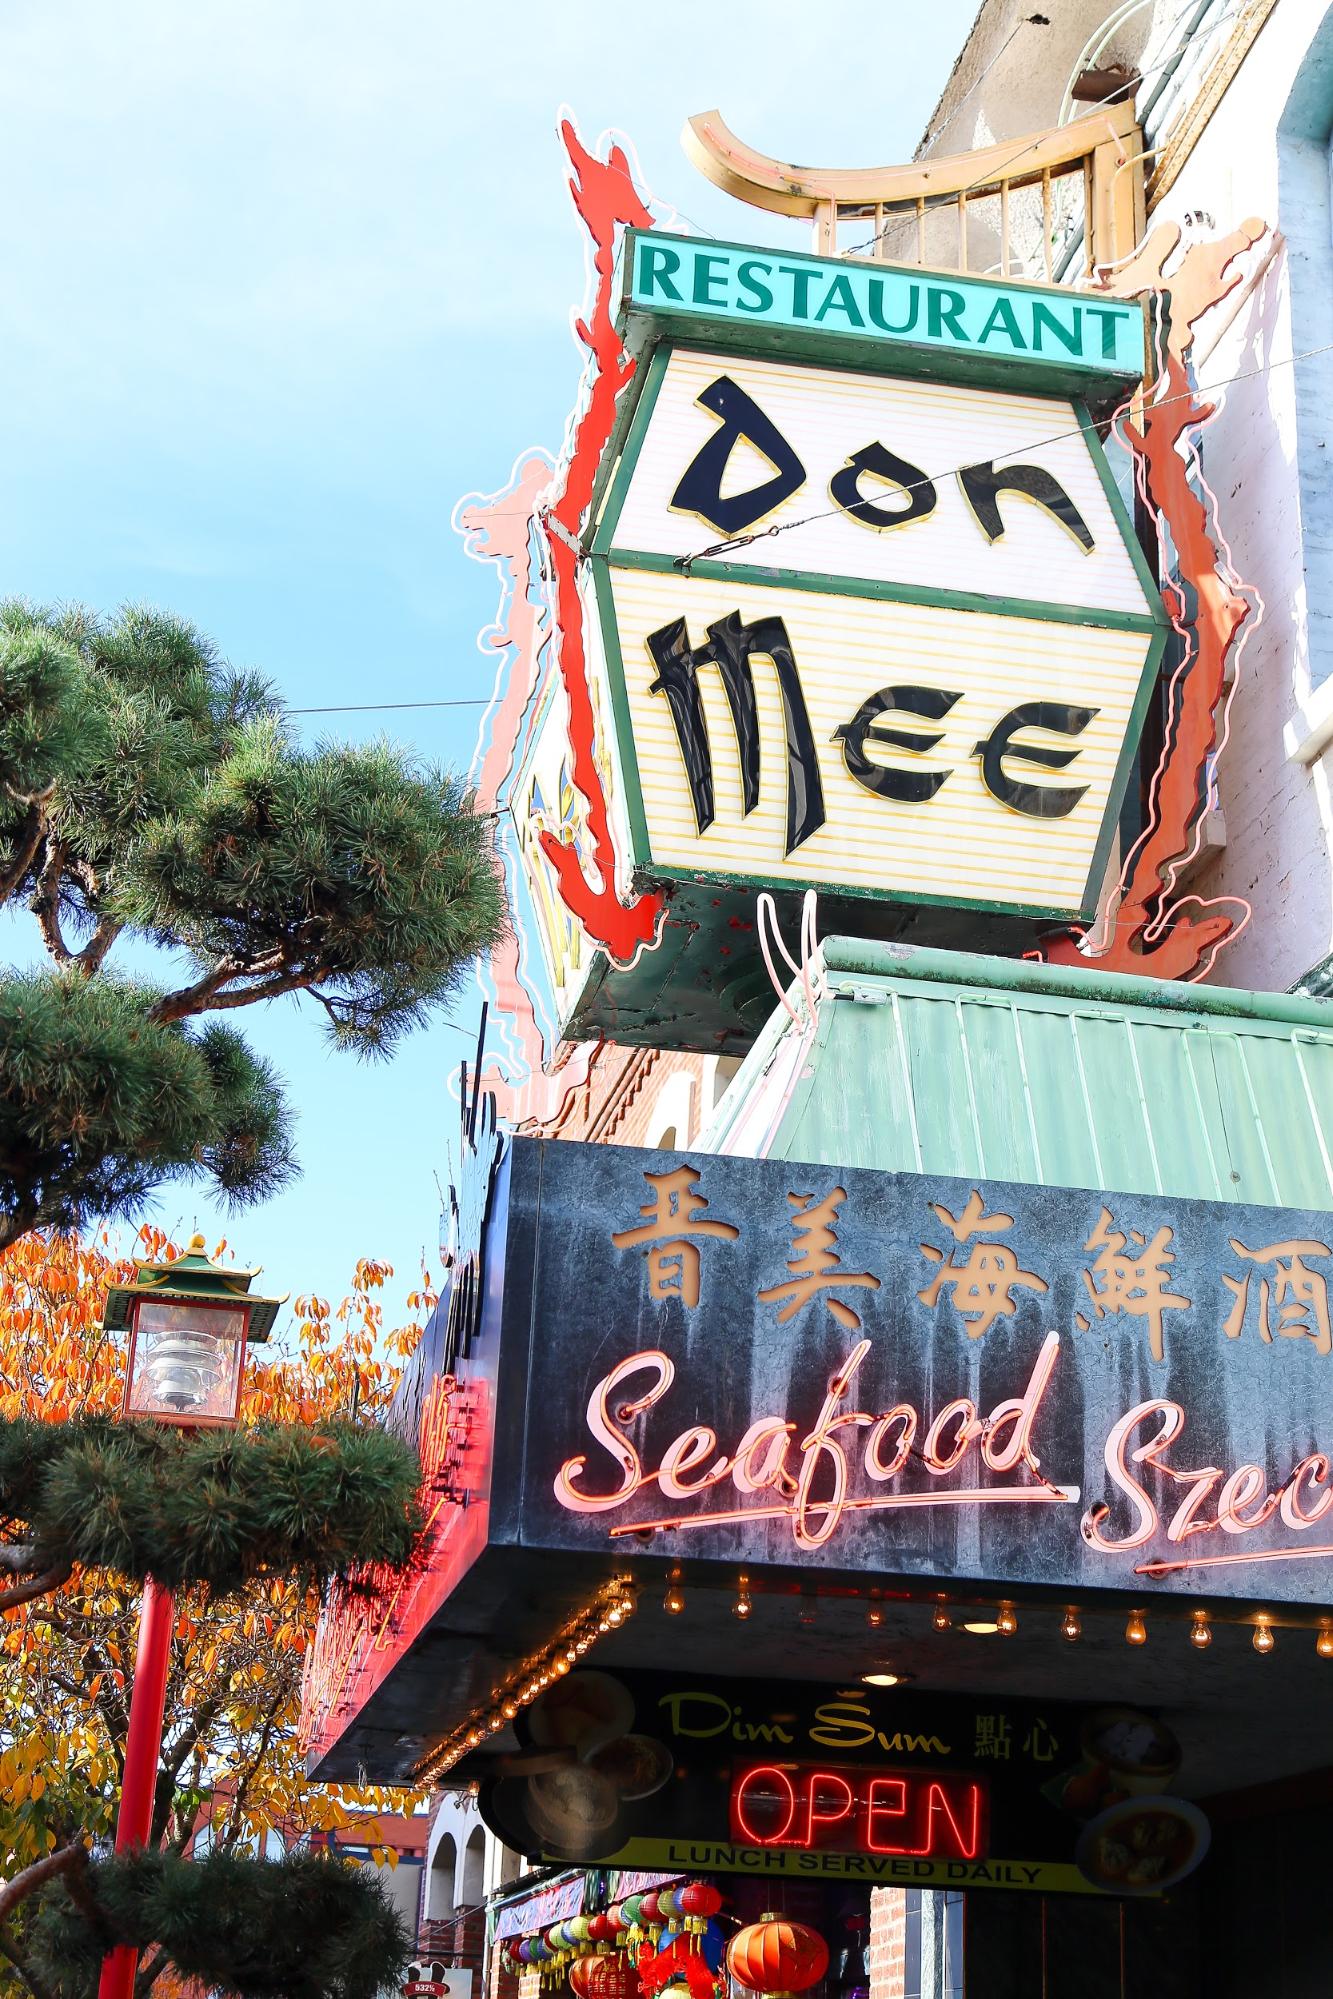 An ornate restaurant named Don Mee.